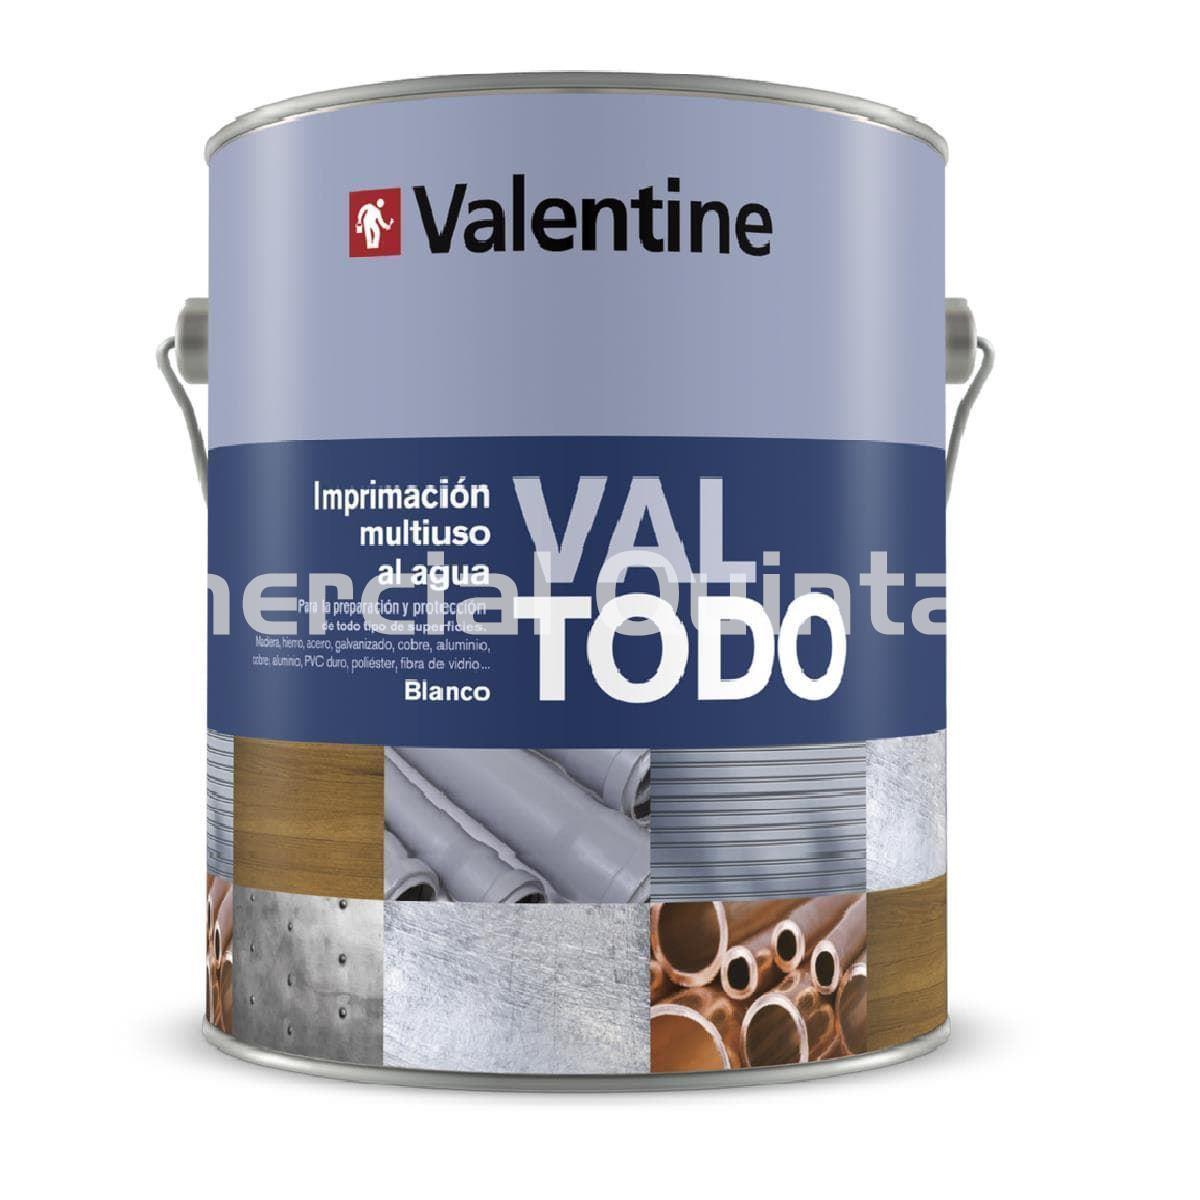 VALENTINE Valtodo - Imagen 1